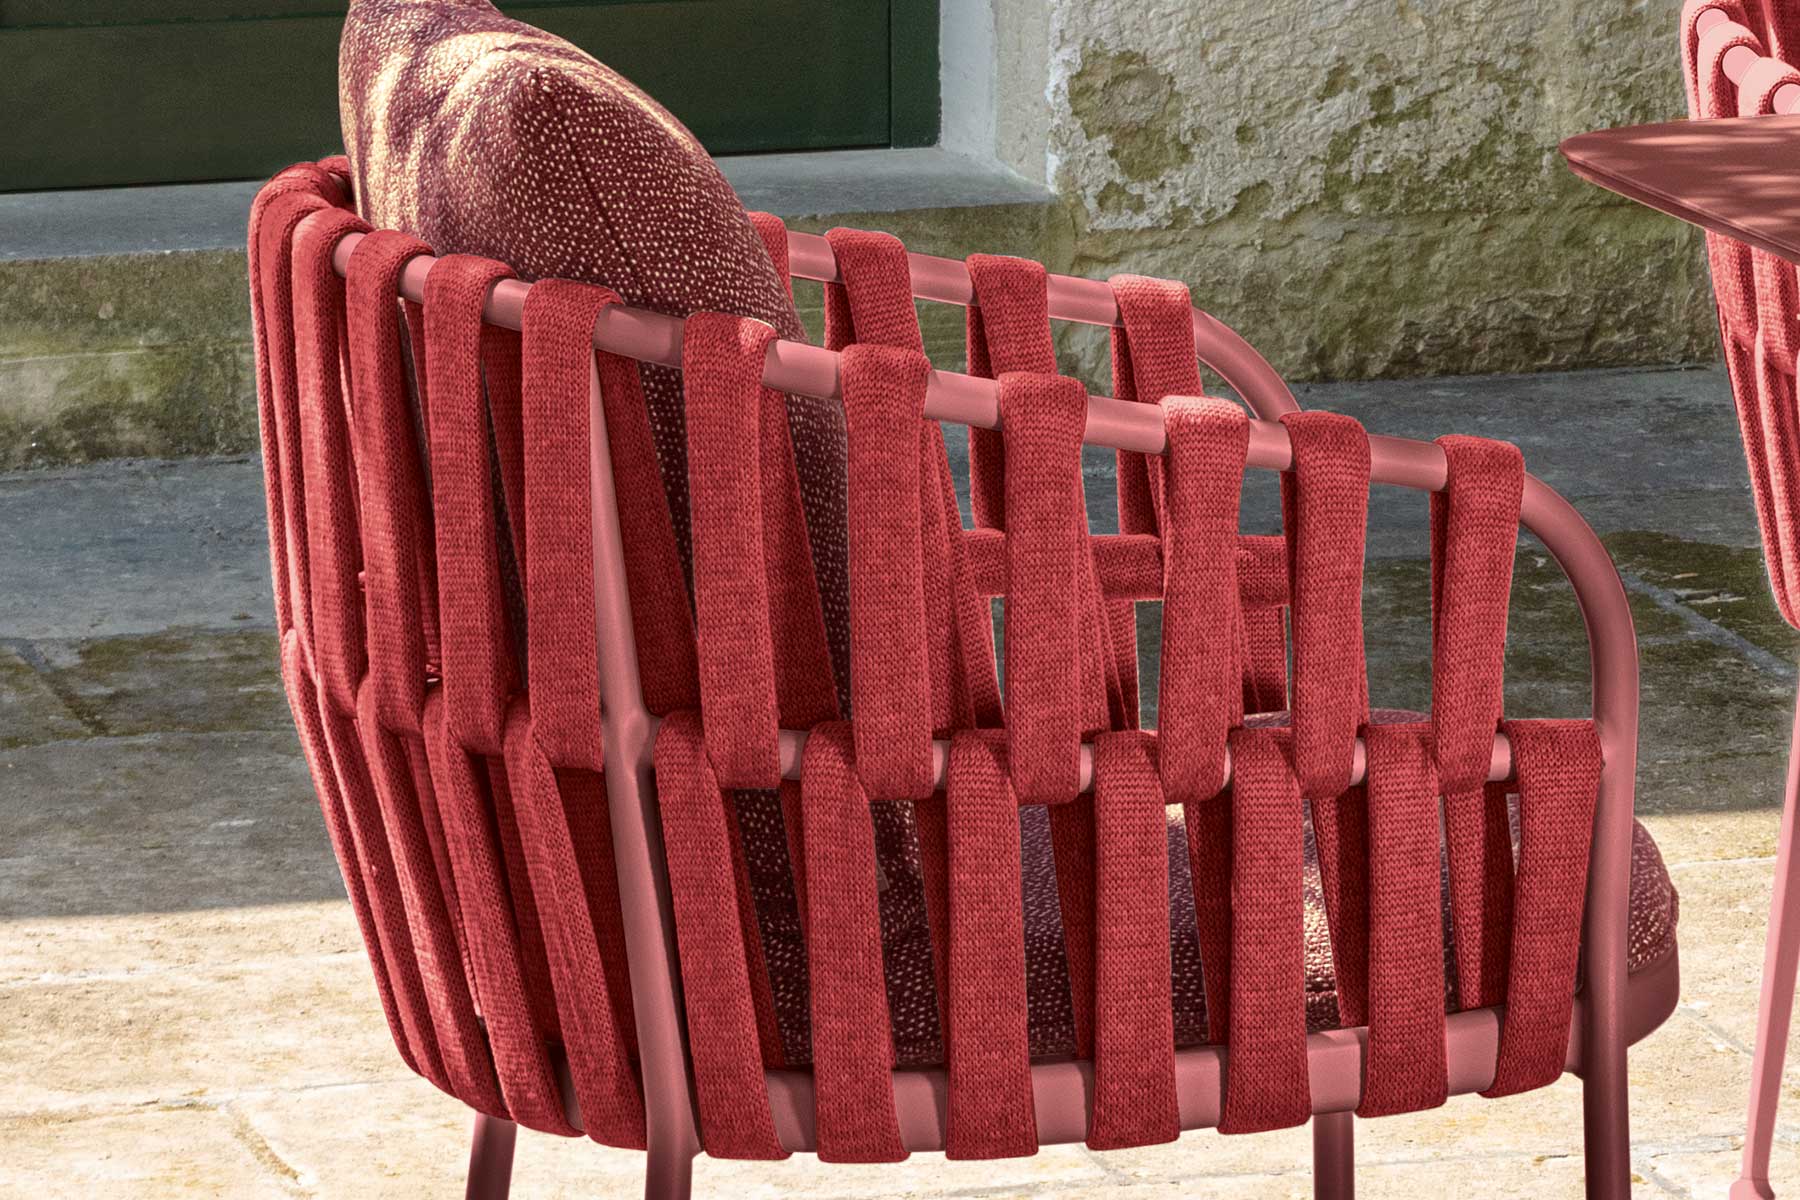 Acquista online Fabric, sedia da giardino rossa con struttura in alluminio e intreccio di corde che creano giochi di luce. Consegna a domicilio gratuita.